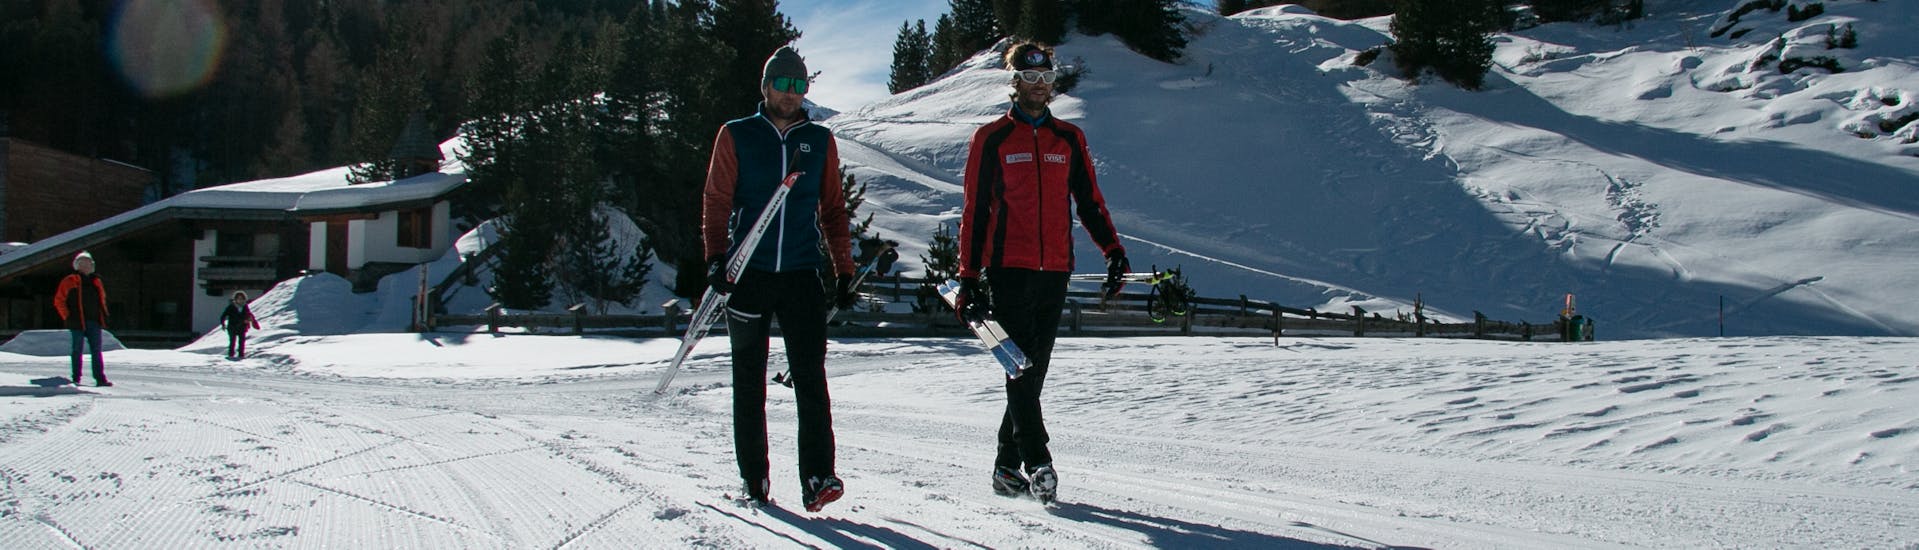 Clases de esquí de fondo para principiantes.